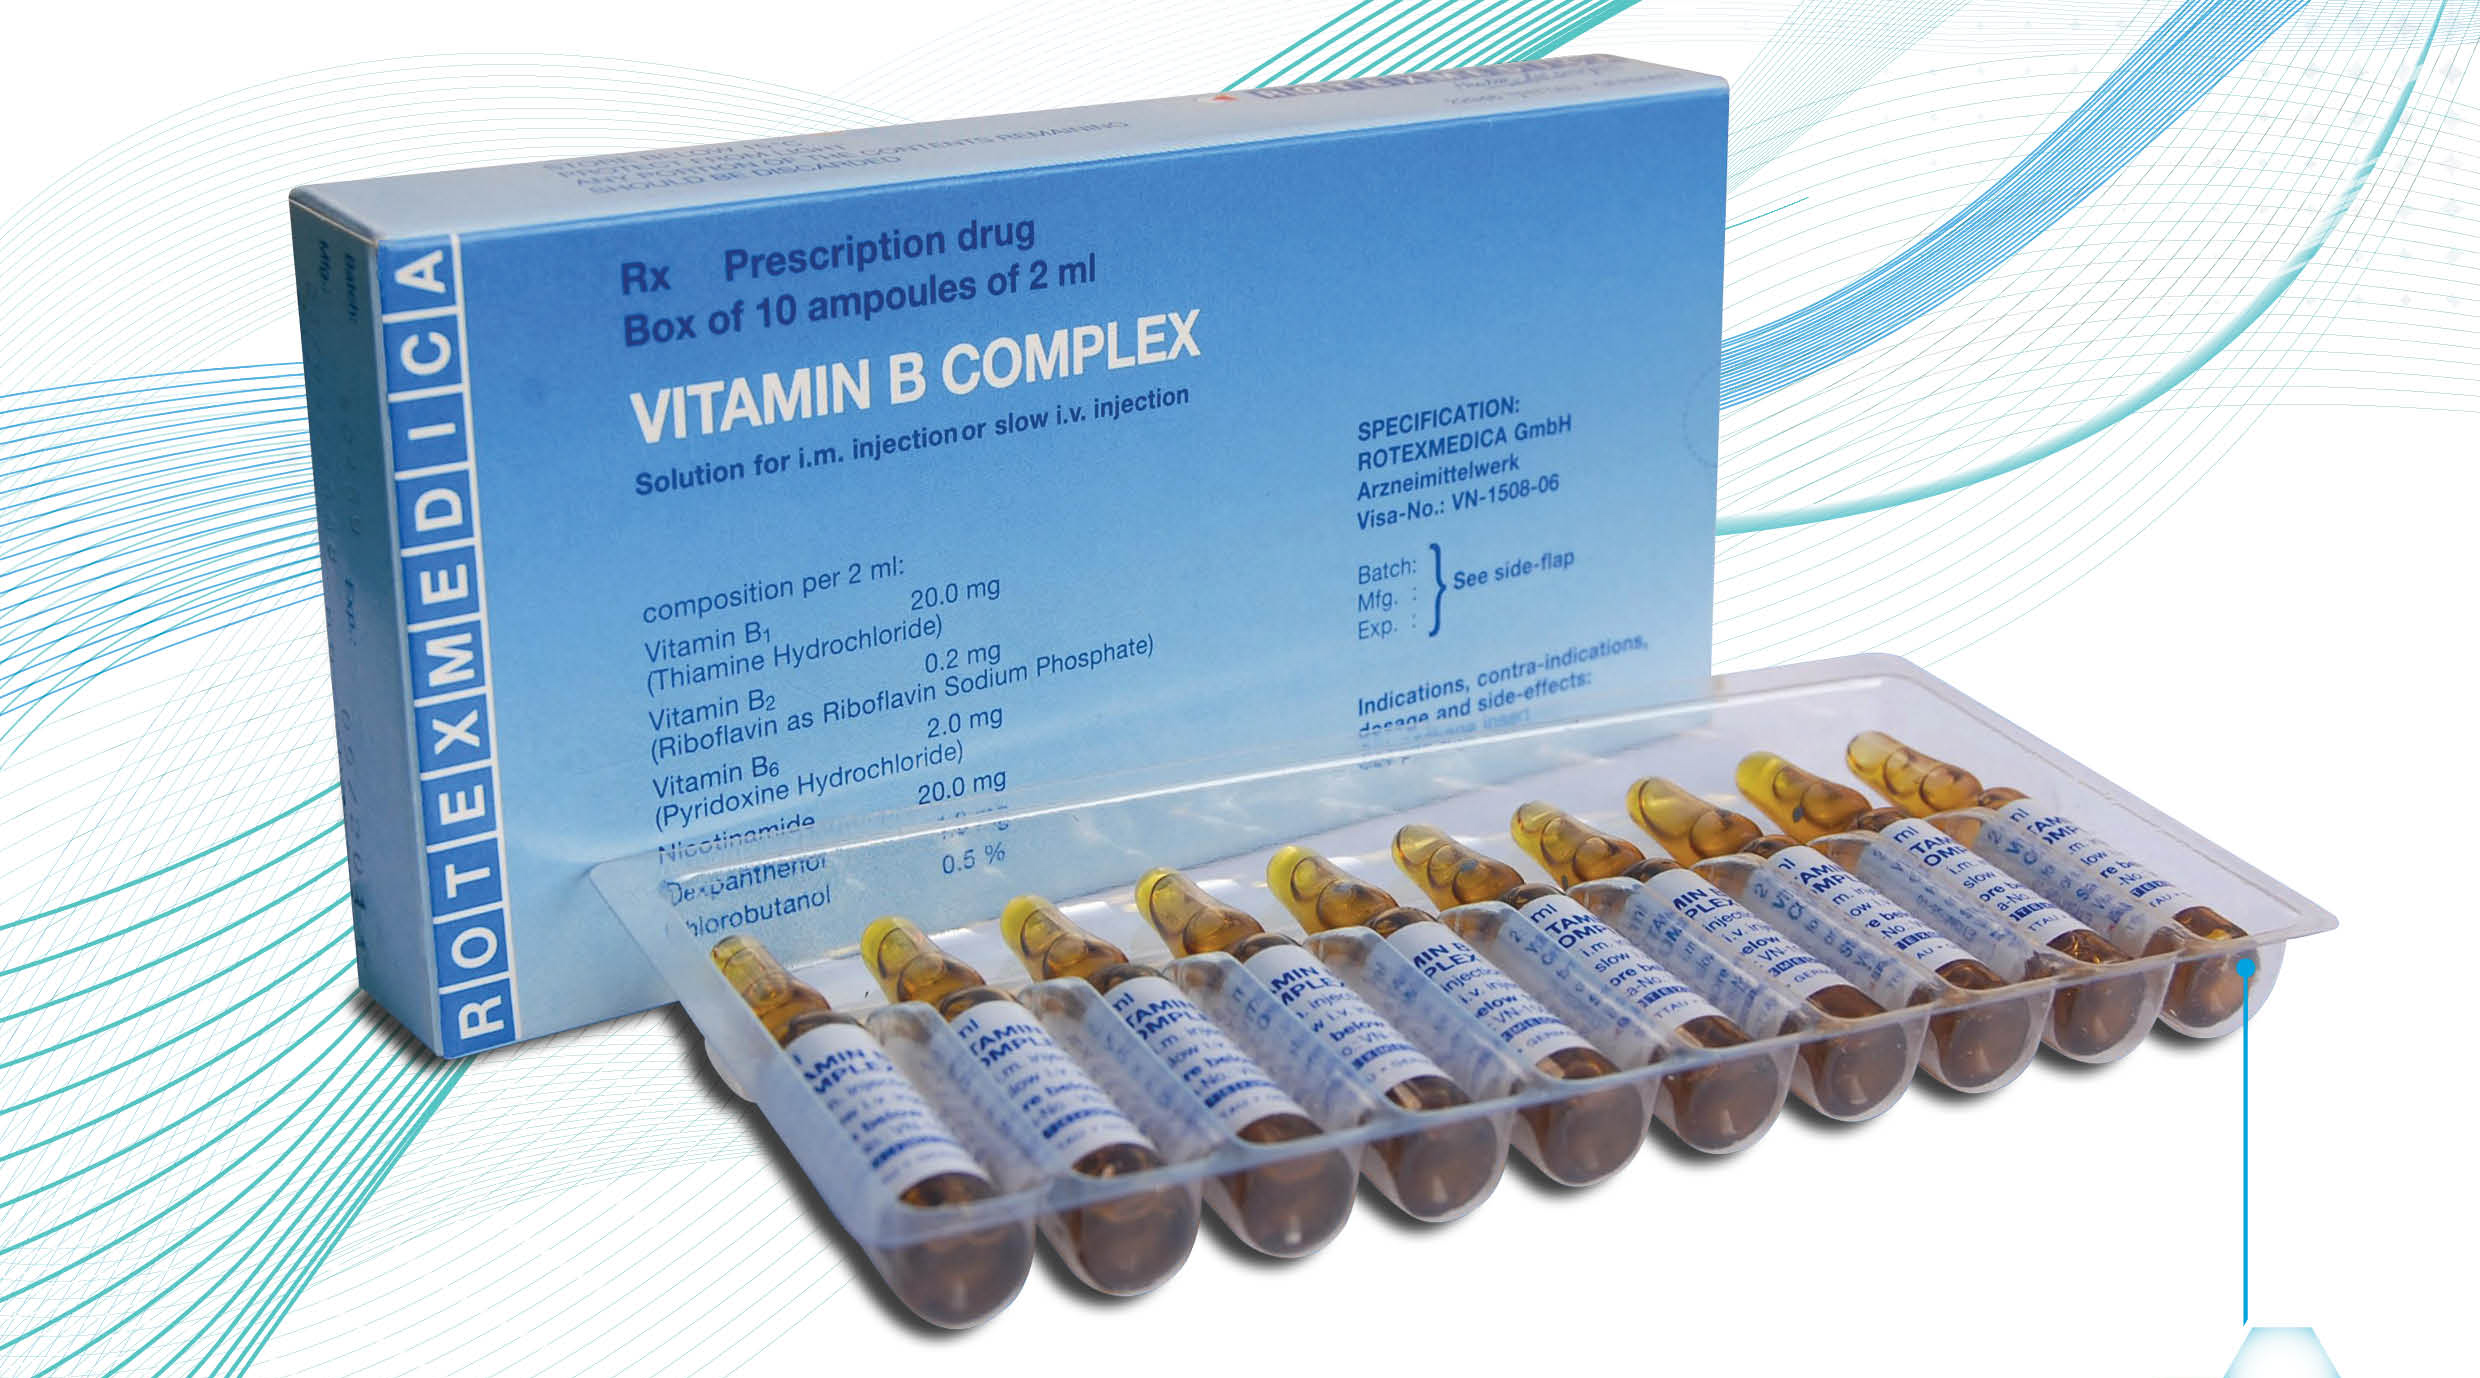 Thuốc B complex vitamin có tác dụng hỗ trợ điều trị các bệnh gì?